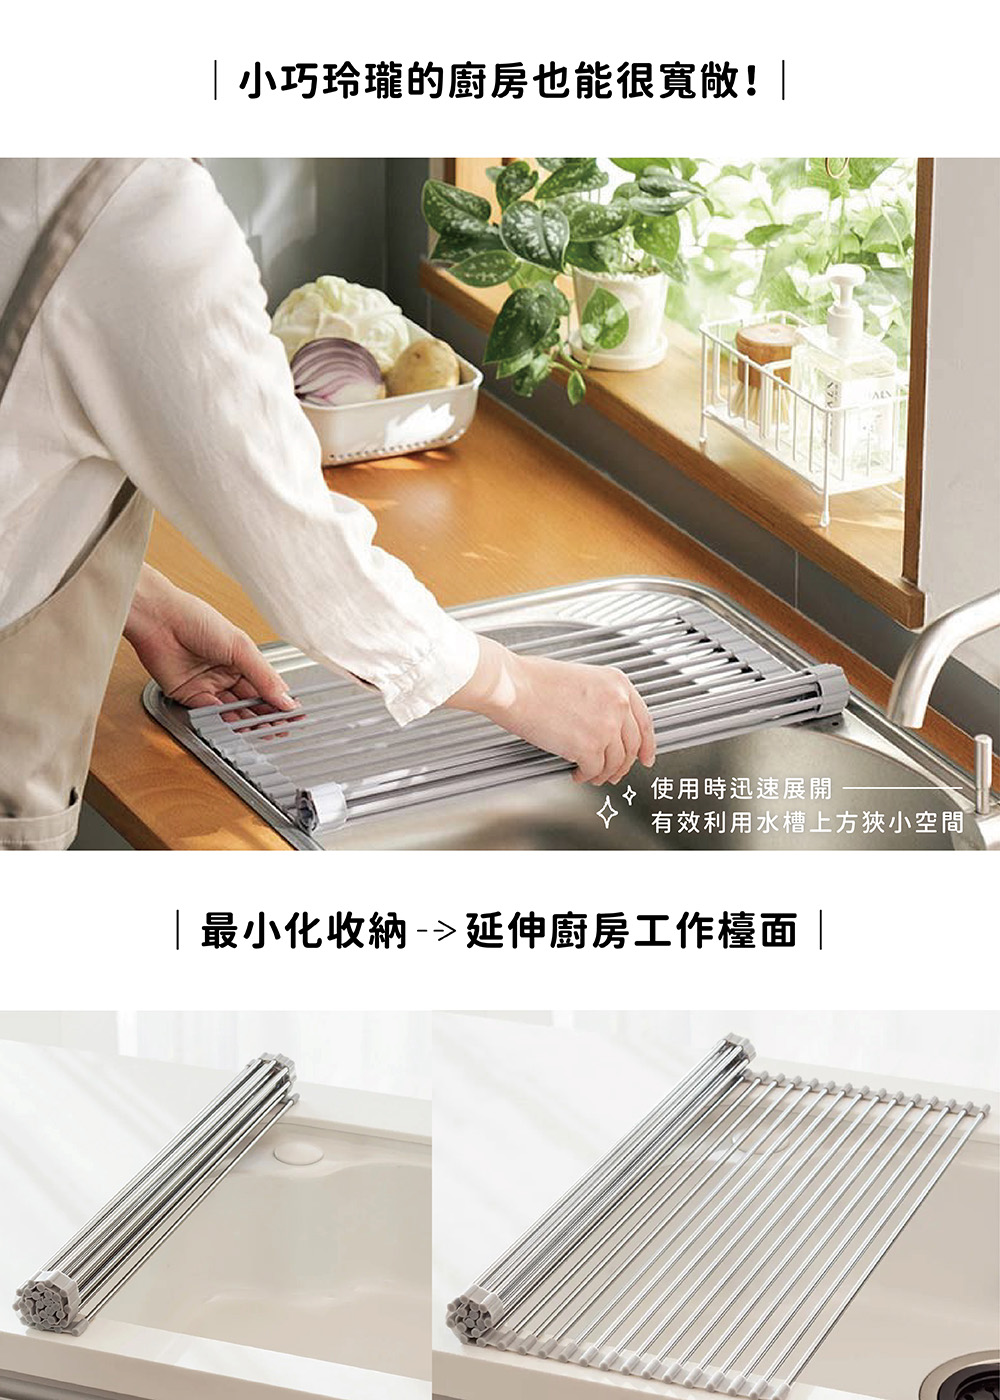 MTSUI 日本製304不鏽鋼水槽瀝水架47cm(捲簾式設計